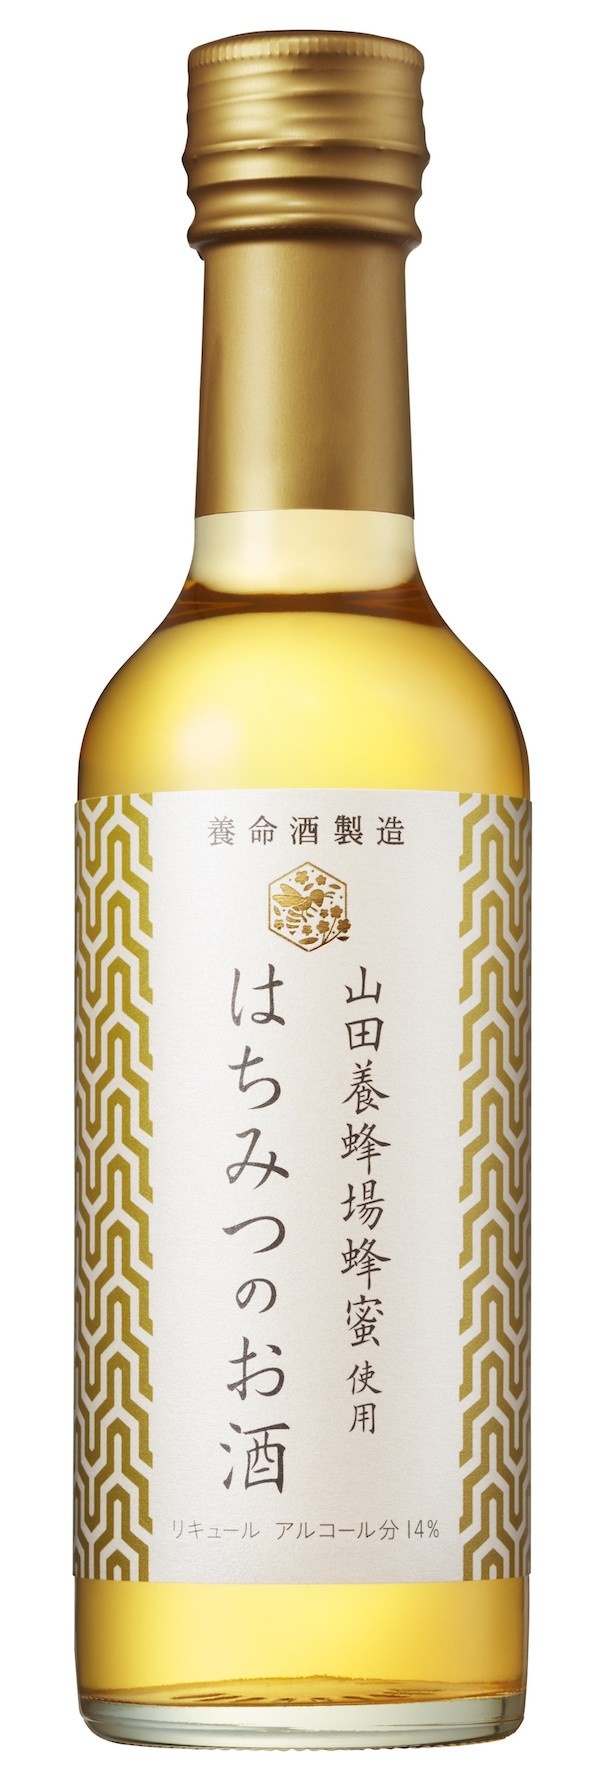 山田養蜂場の有機はちみつがたっぷり入った「はちみつのお酒」新発売